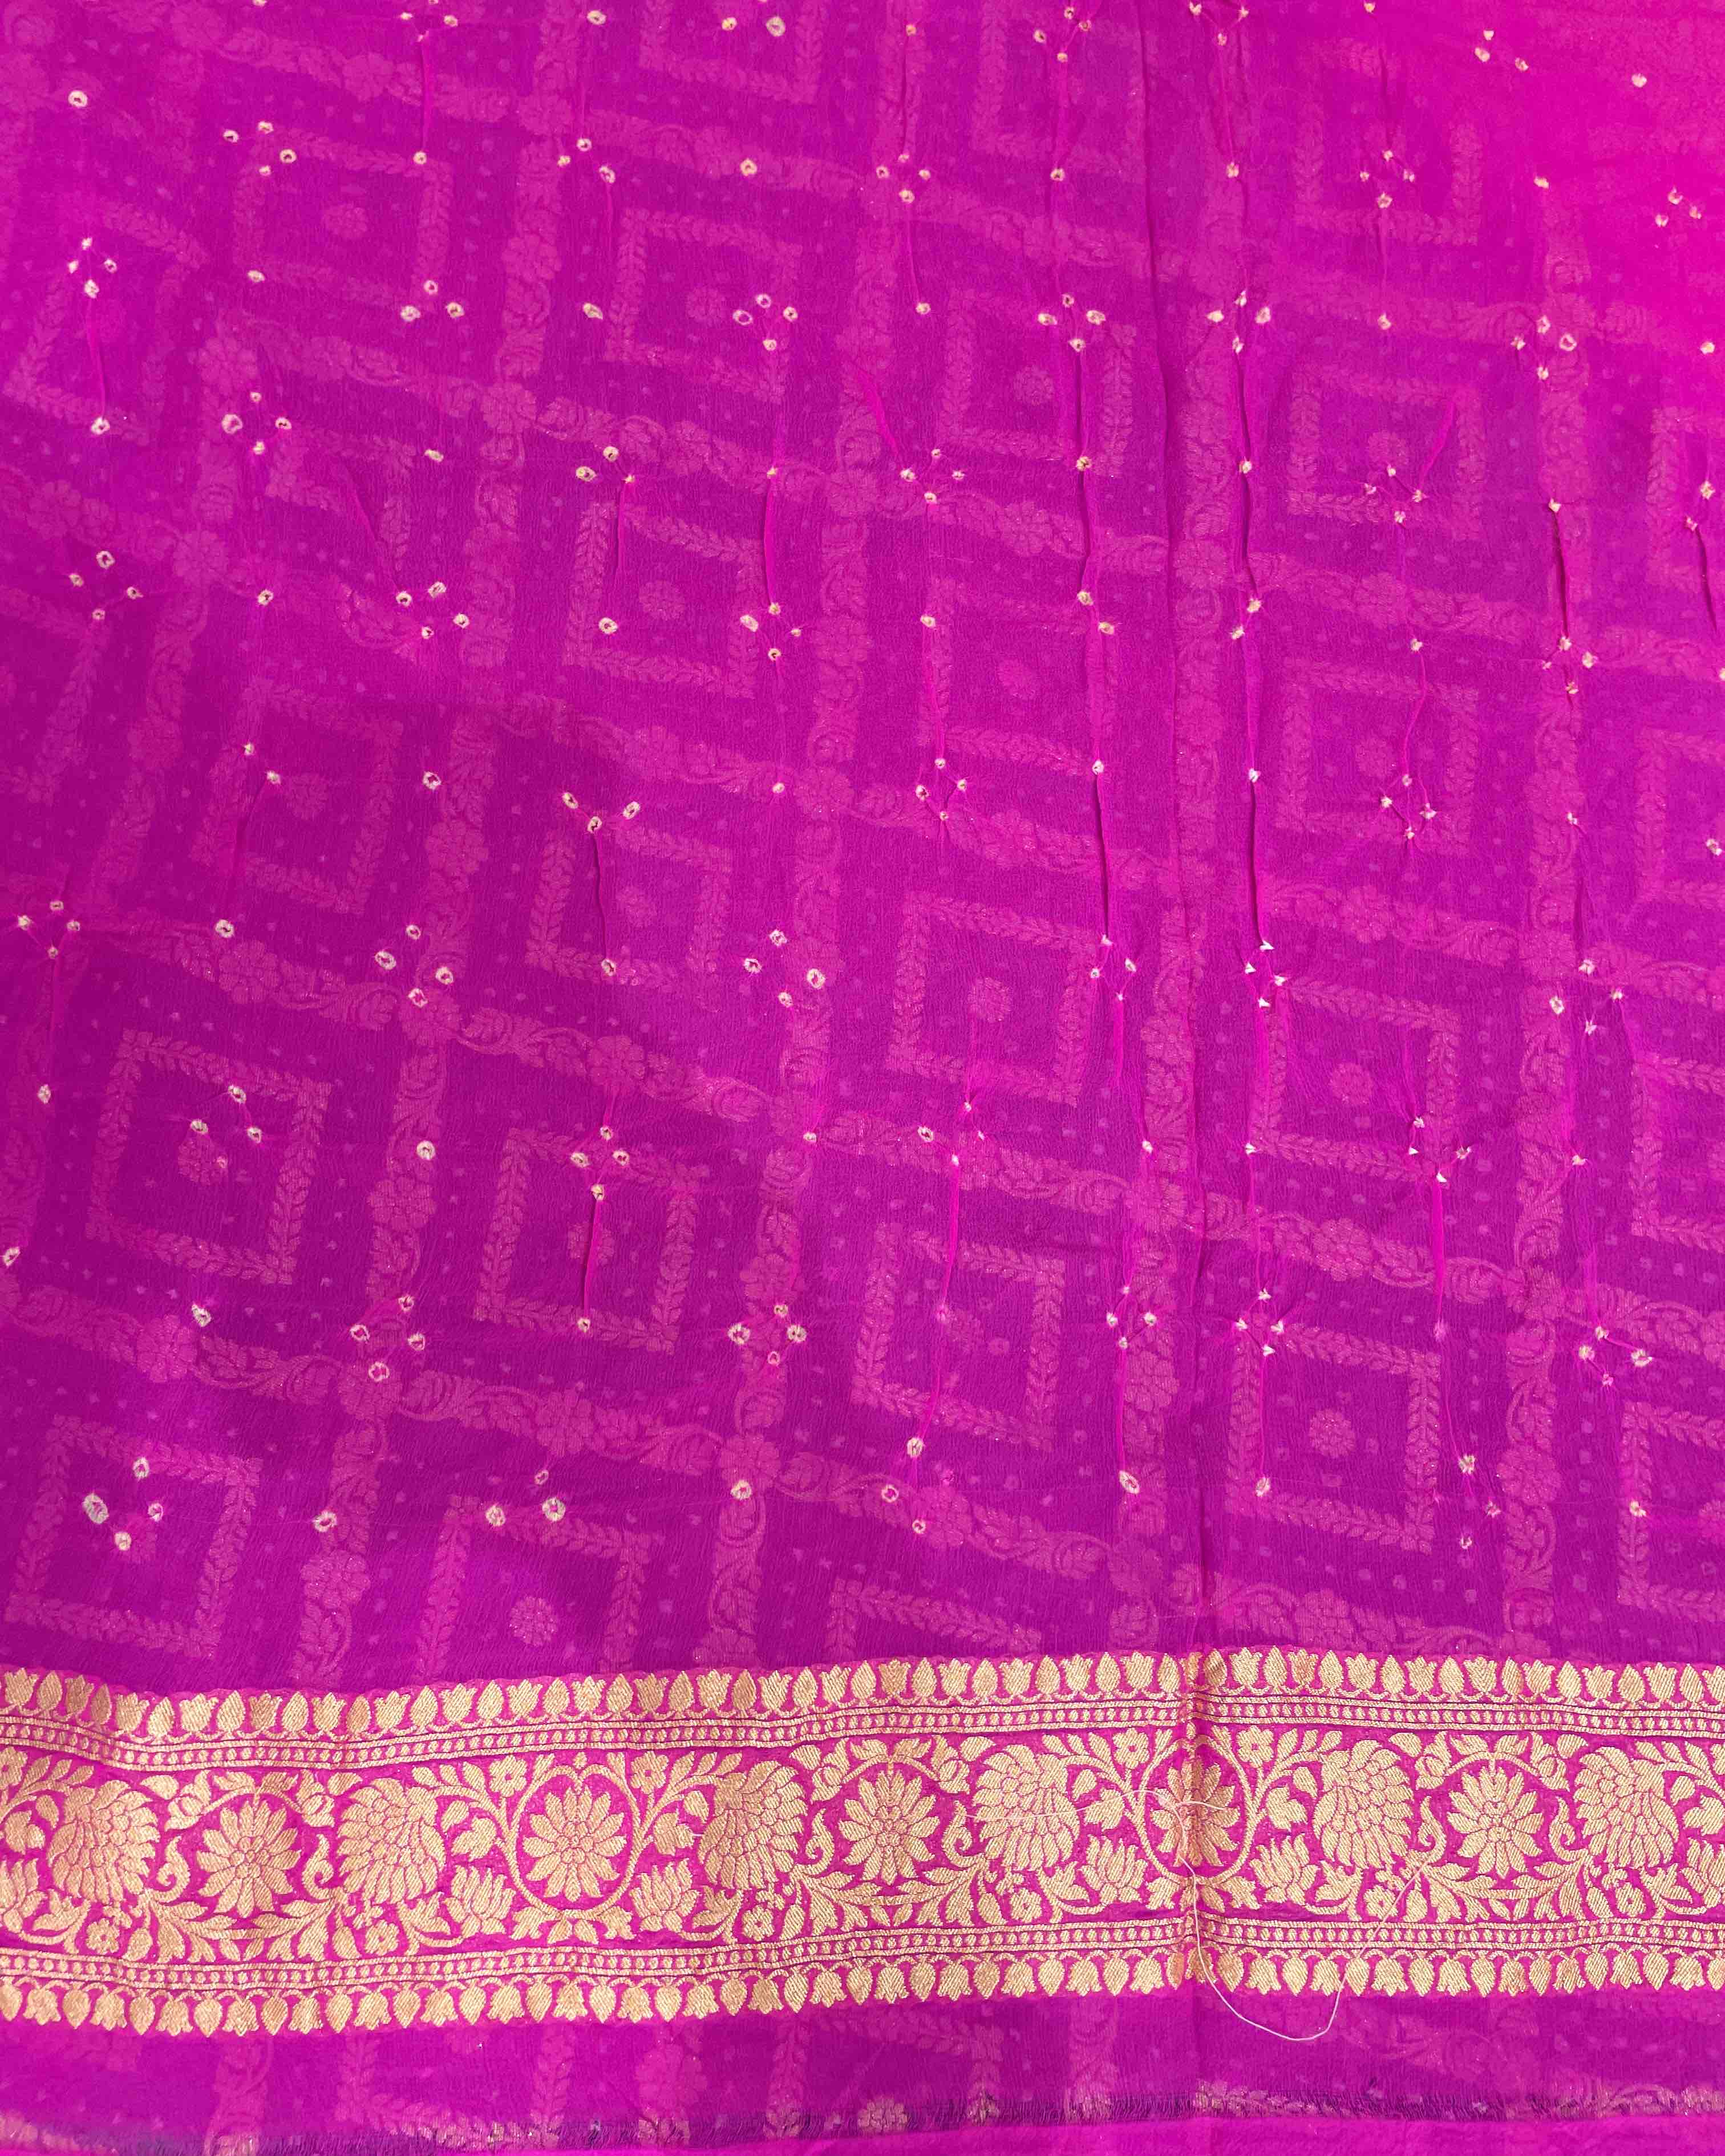 Pink & Dark Greish Banarasi Bandhani Saree